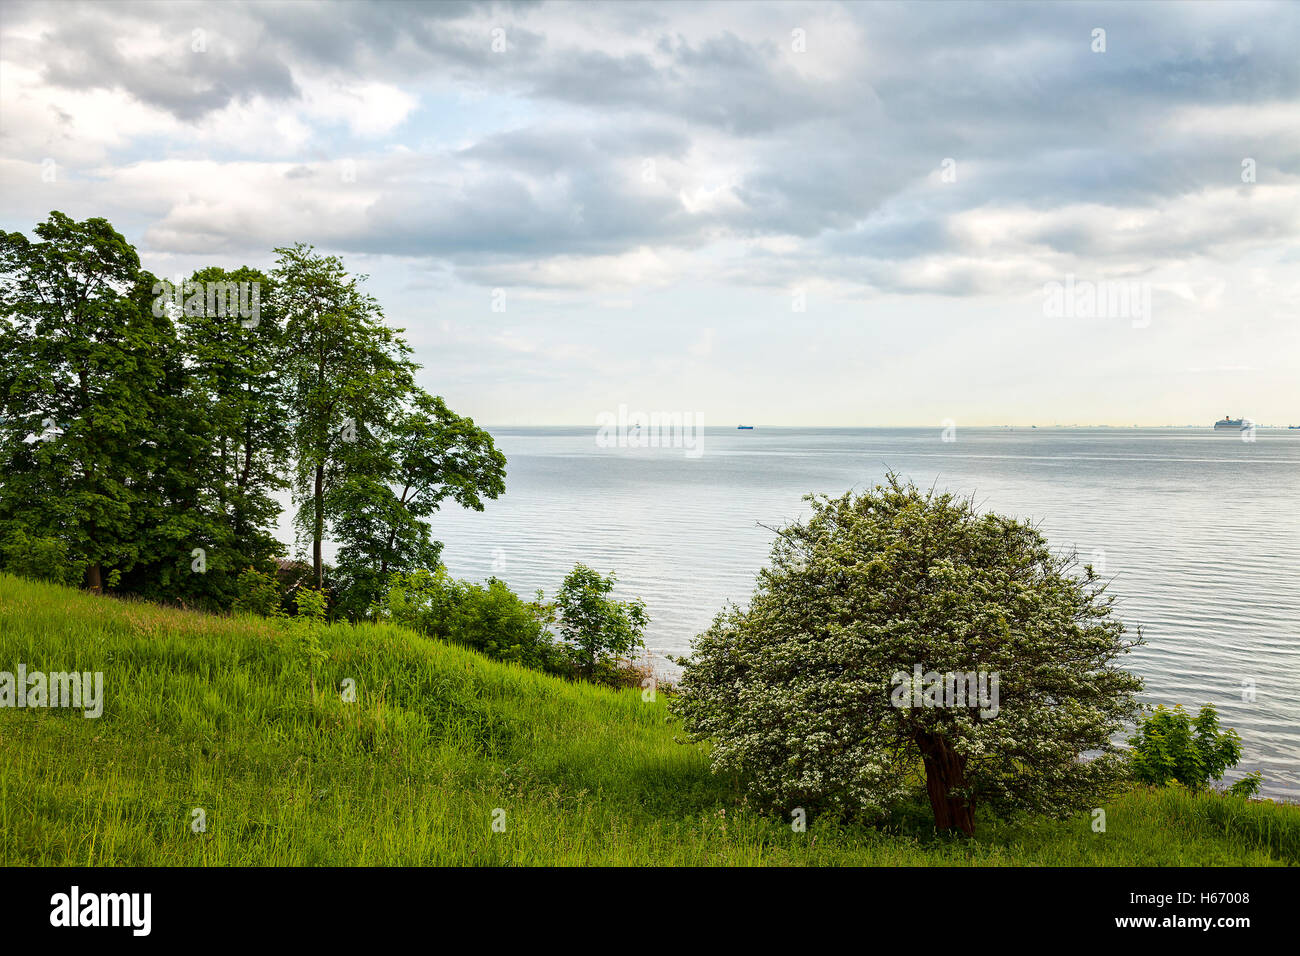 Image of coastal landscape by the south swedish coast. Stock Photo